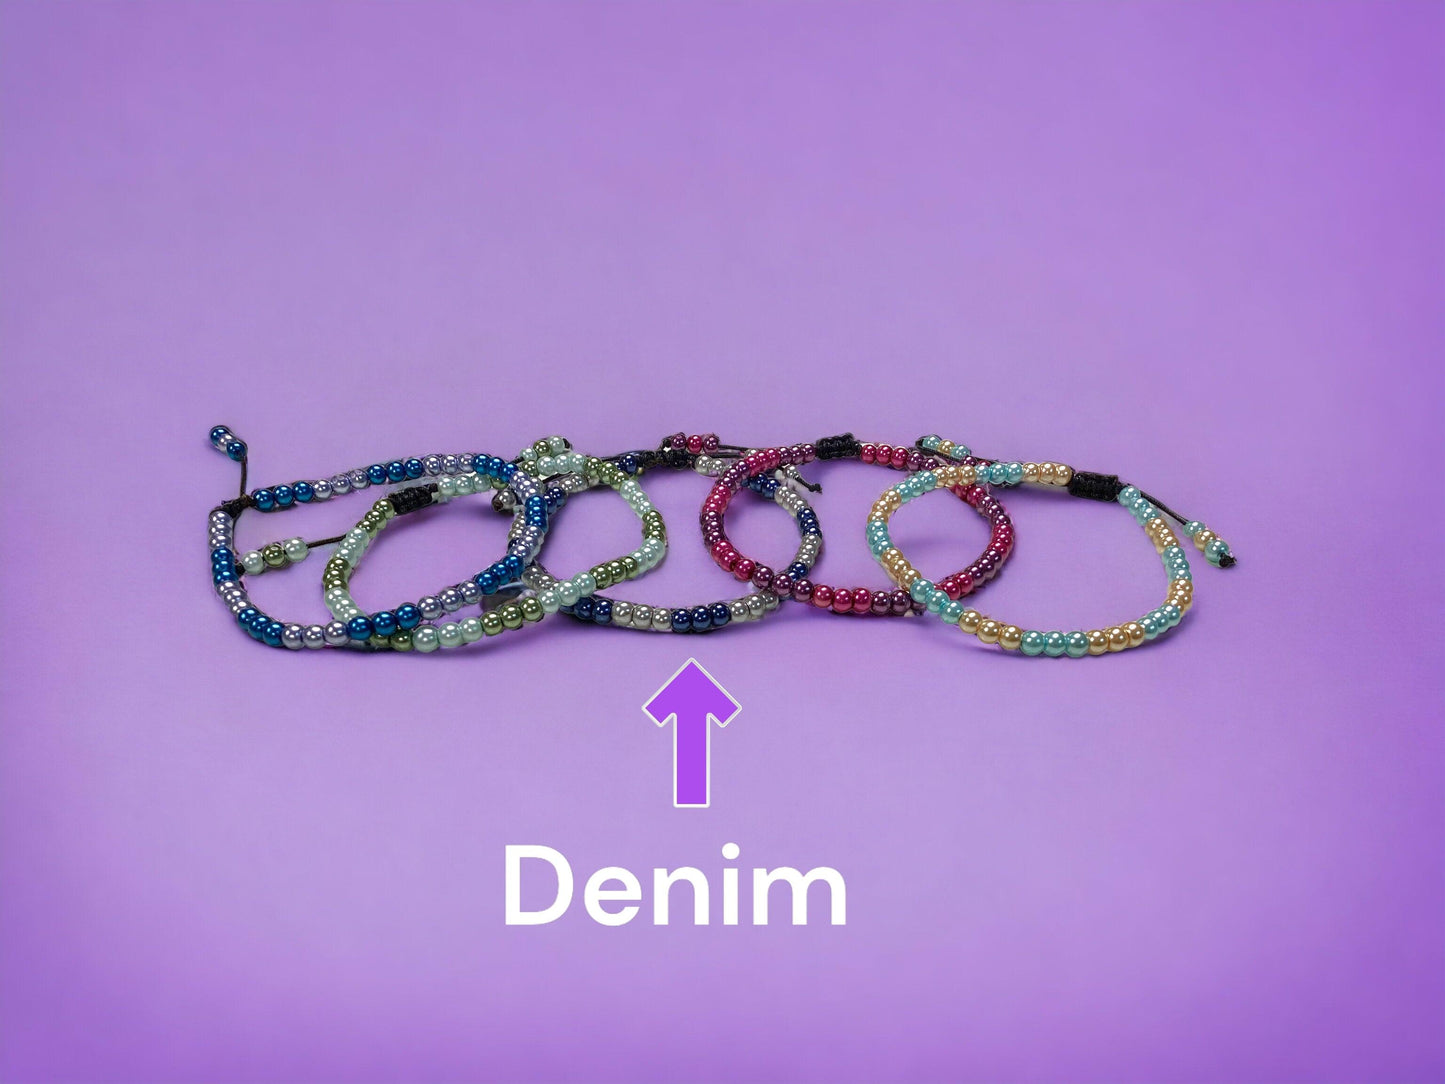 DIY Bracelet Kit -Girls Love Pearls Bracelet (Choose from 5 Styles) - Too Cute Beads